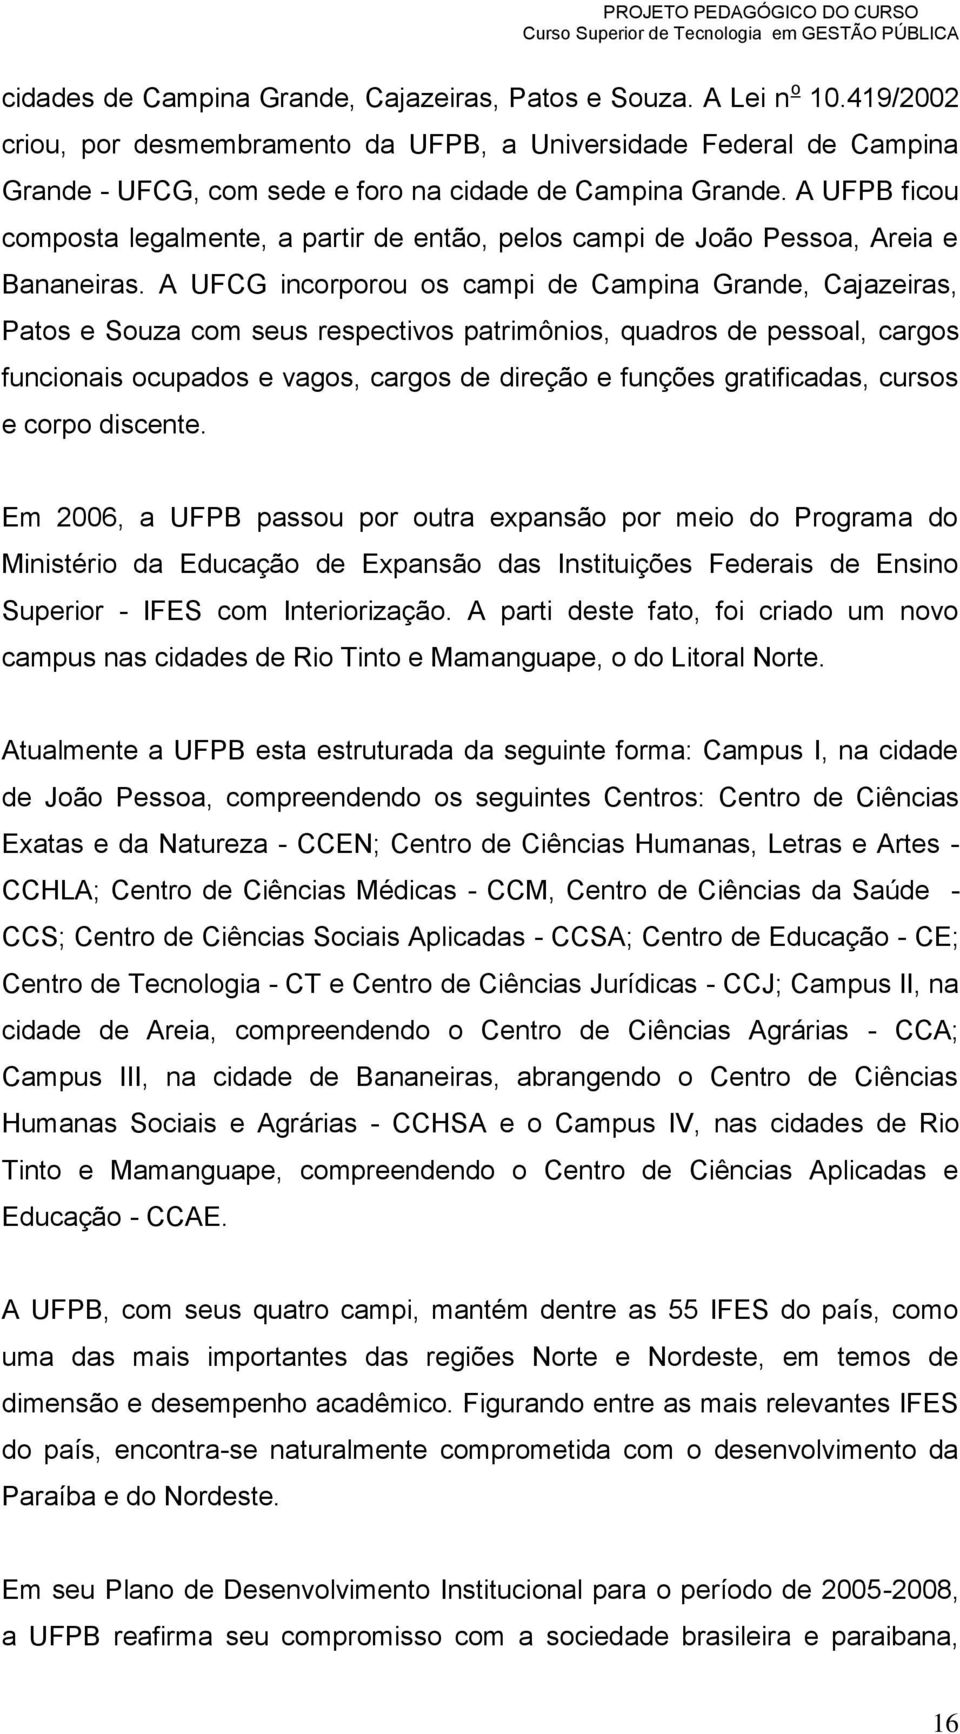 A UFPB ficou composta legalmente, a partir de então, pelos campi de João Pessoa, Areia e Bananeiras.